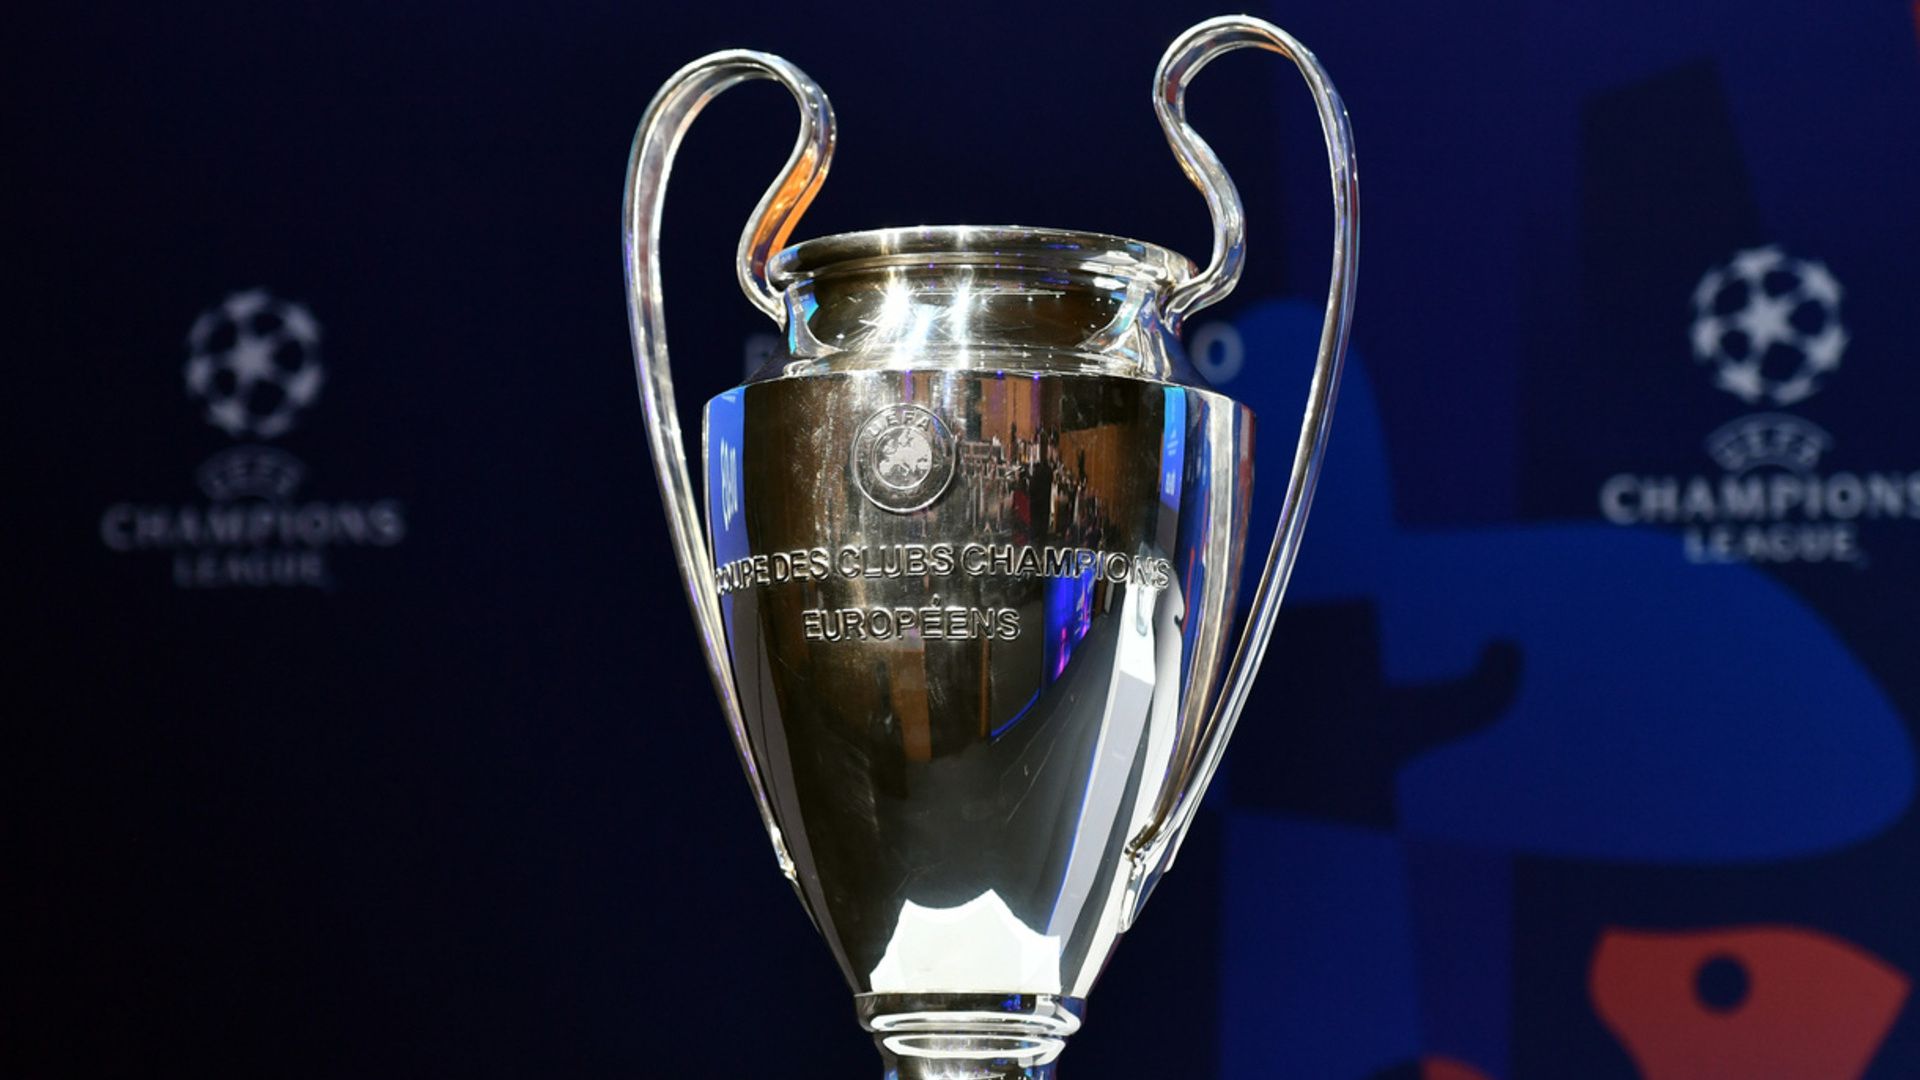 Ligue des champions : l'Atlético Madrid sanctionné par L'UEFA, fermeture partielle du Wanda Metropolitano !